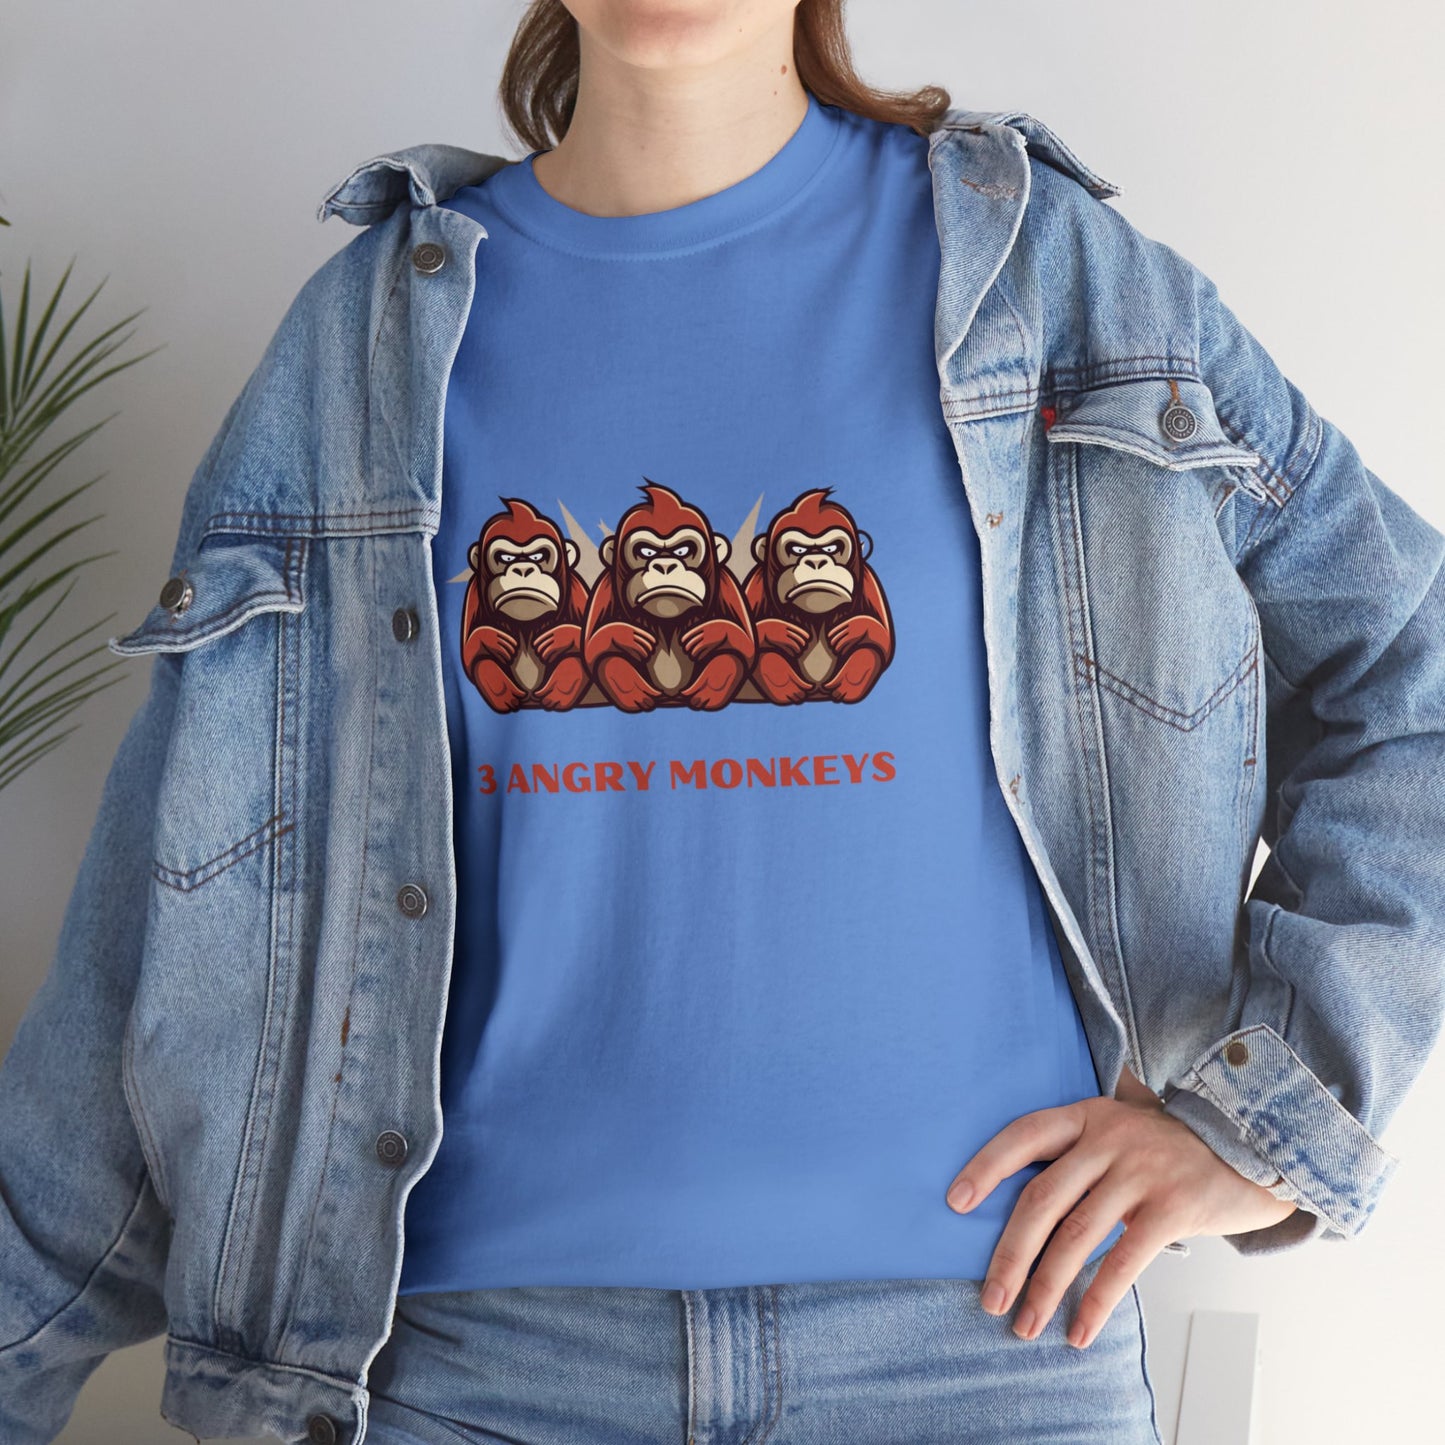 3 Angry Monkeys  - Unisex T-Shirt